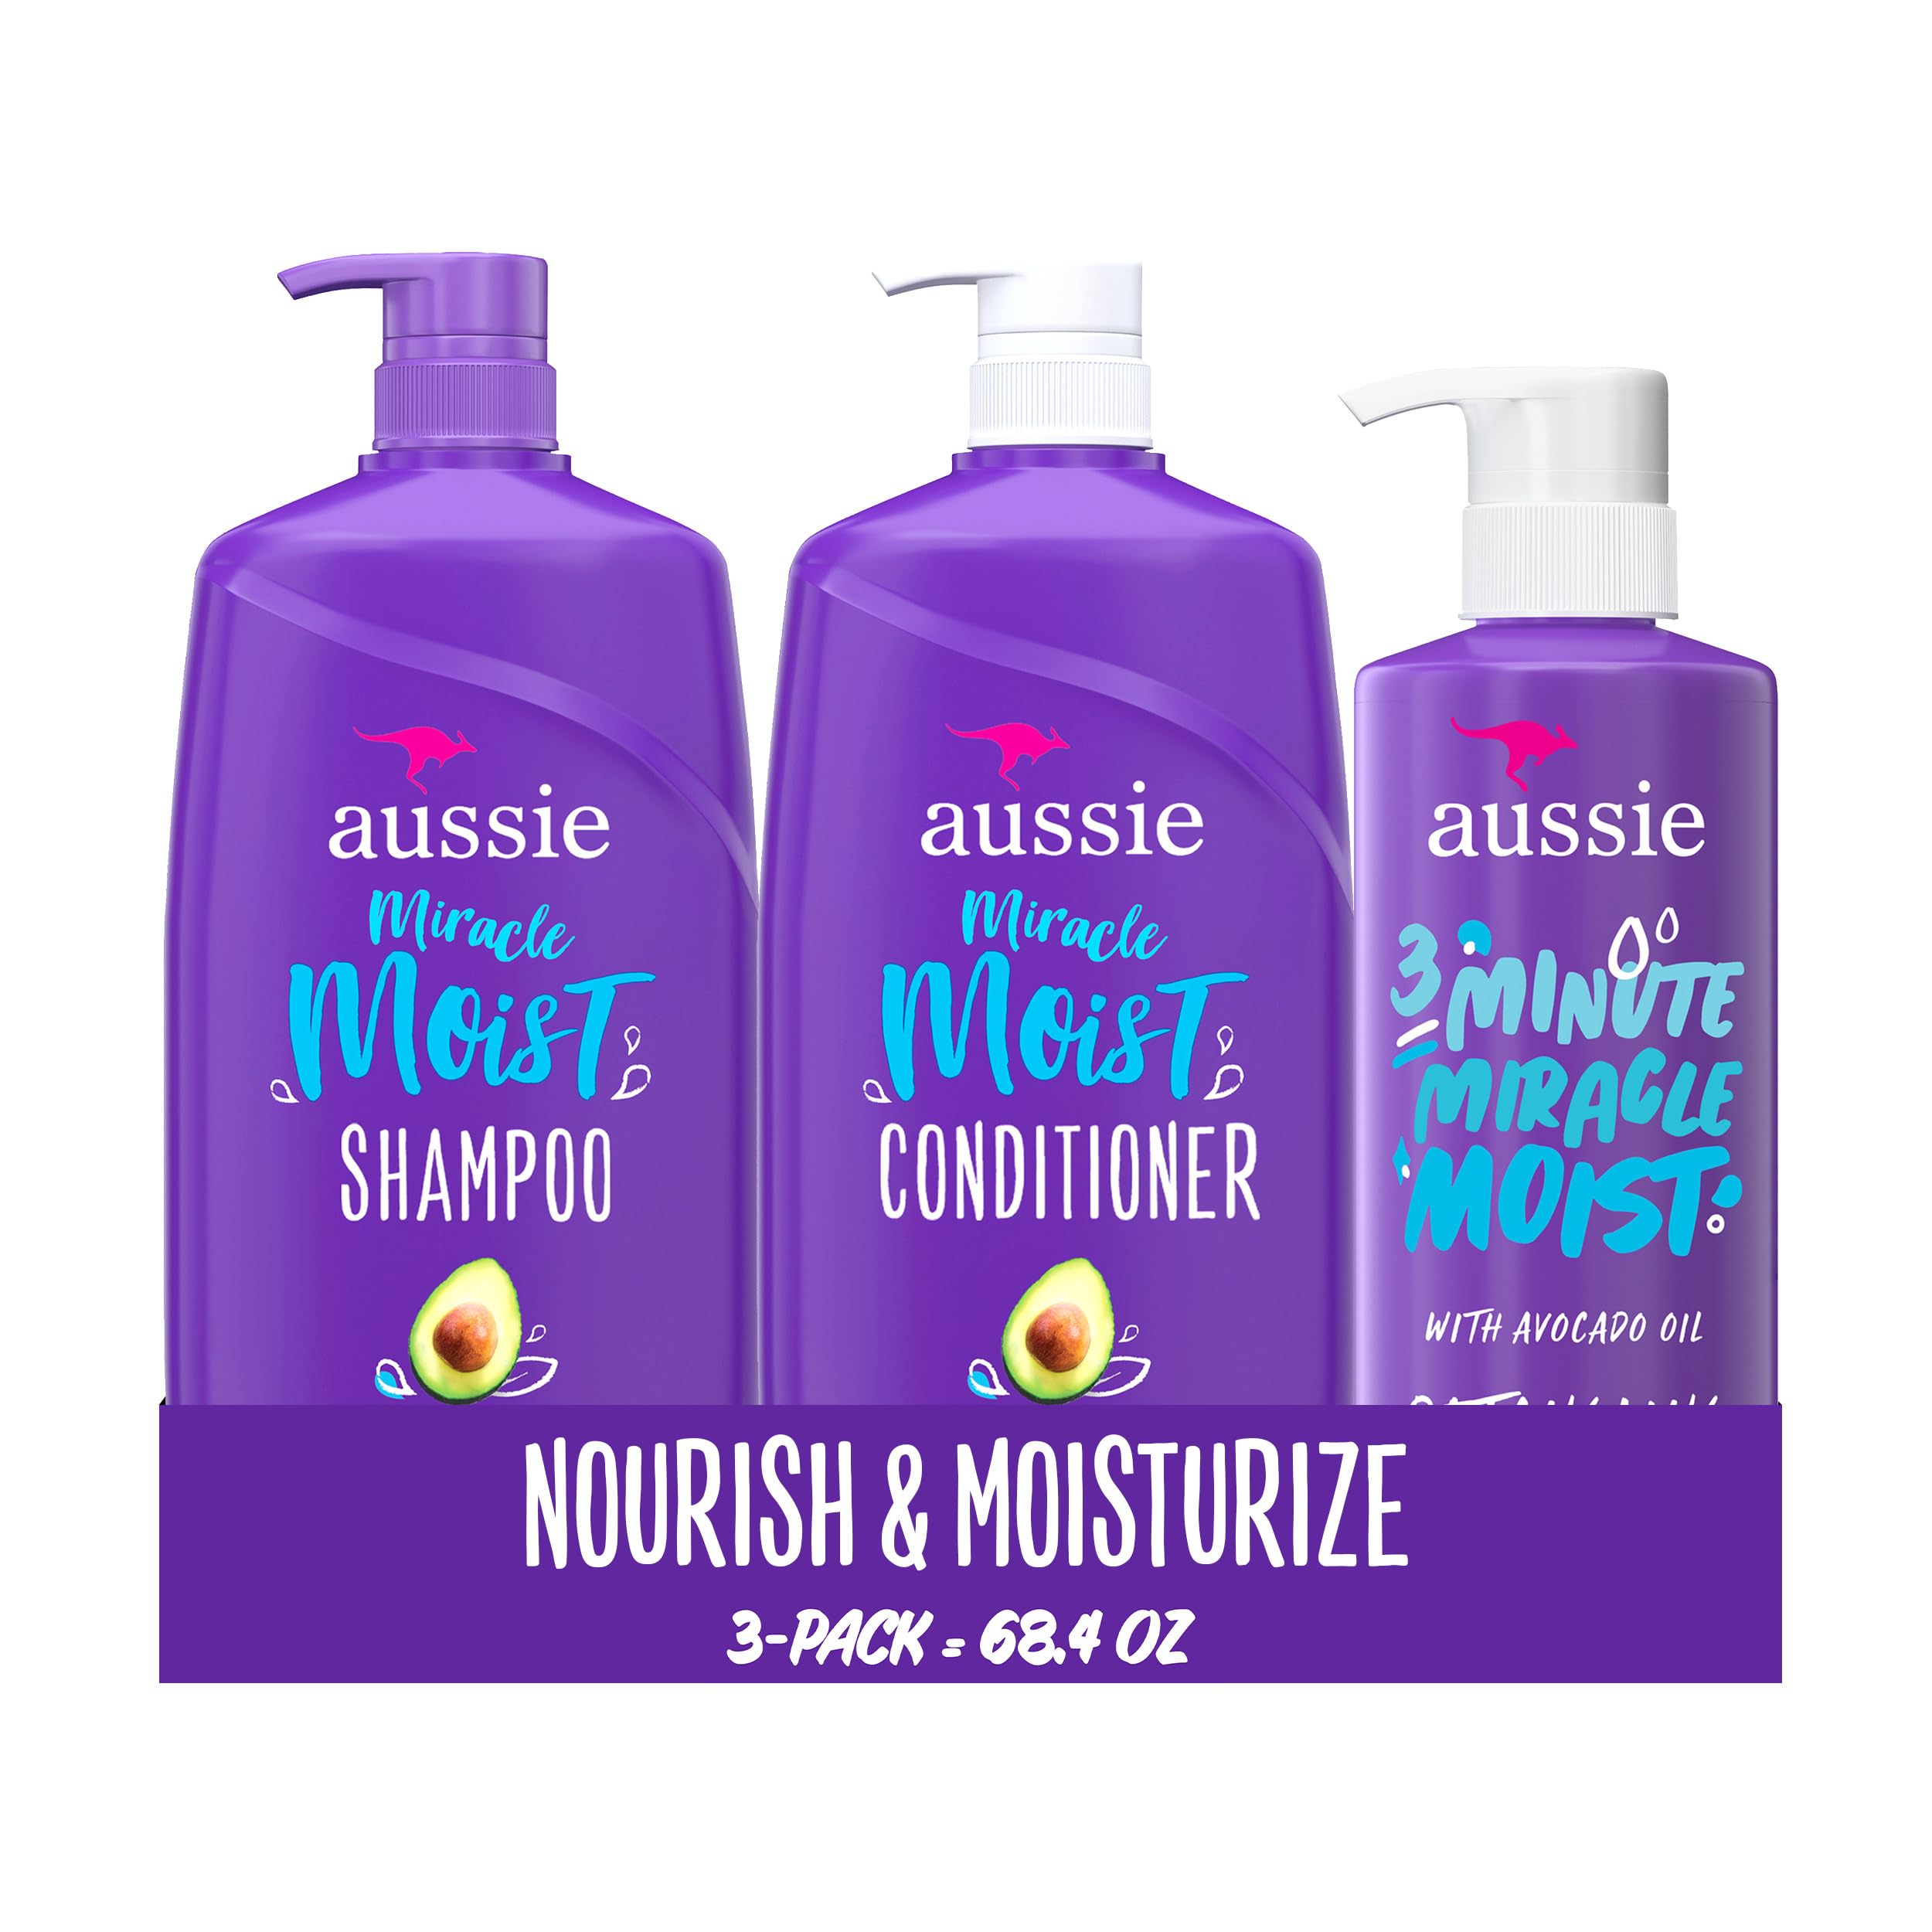 aussie miracle moist szampon i odżywka 3 minutowy cud